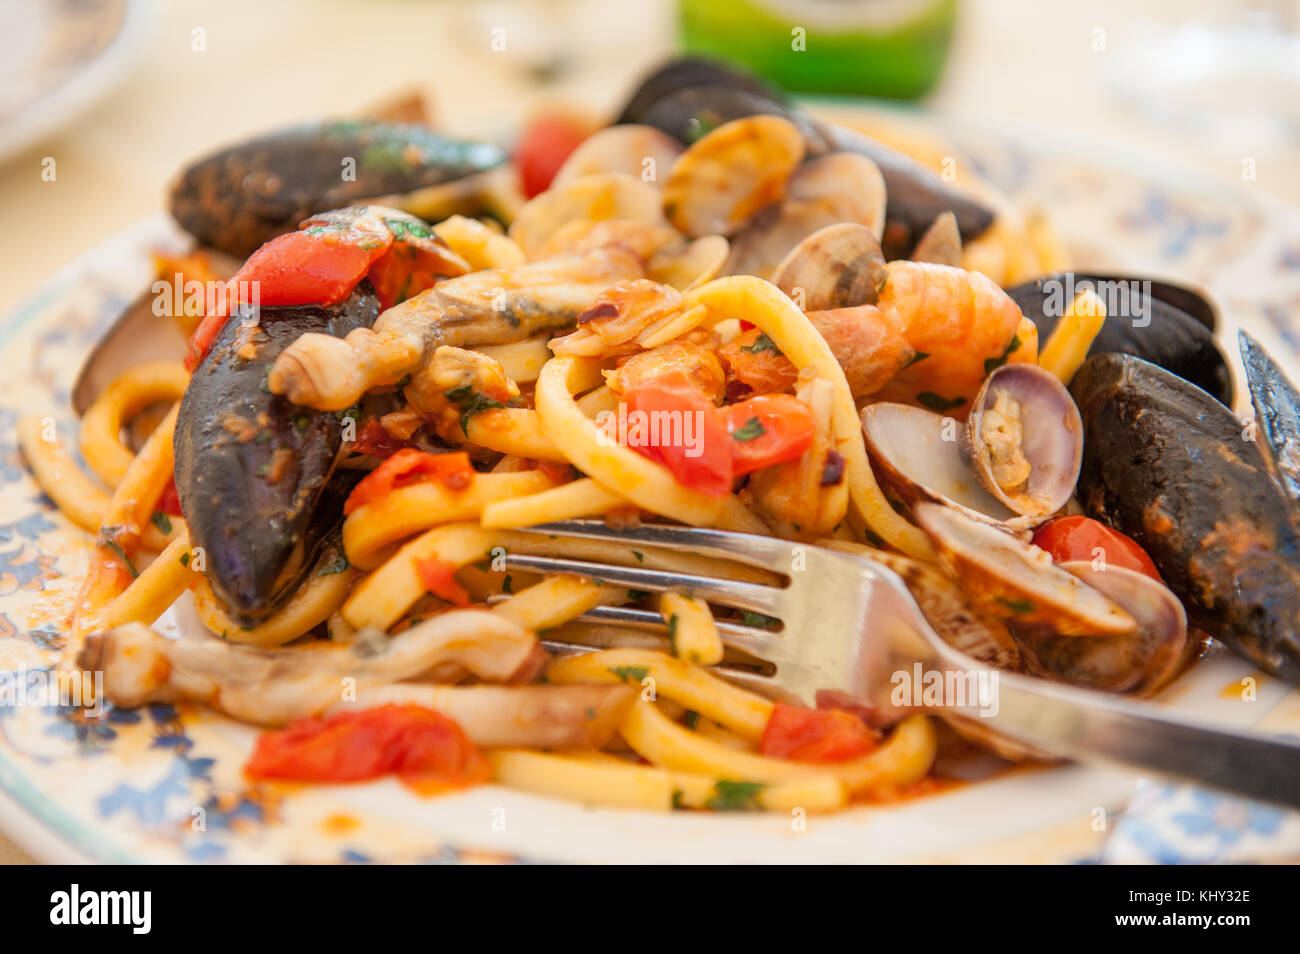 Spaghetti allo scoglio - Italian seafood pasta Stock Photo